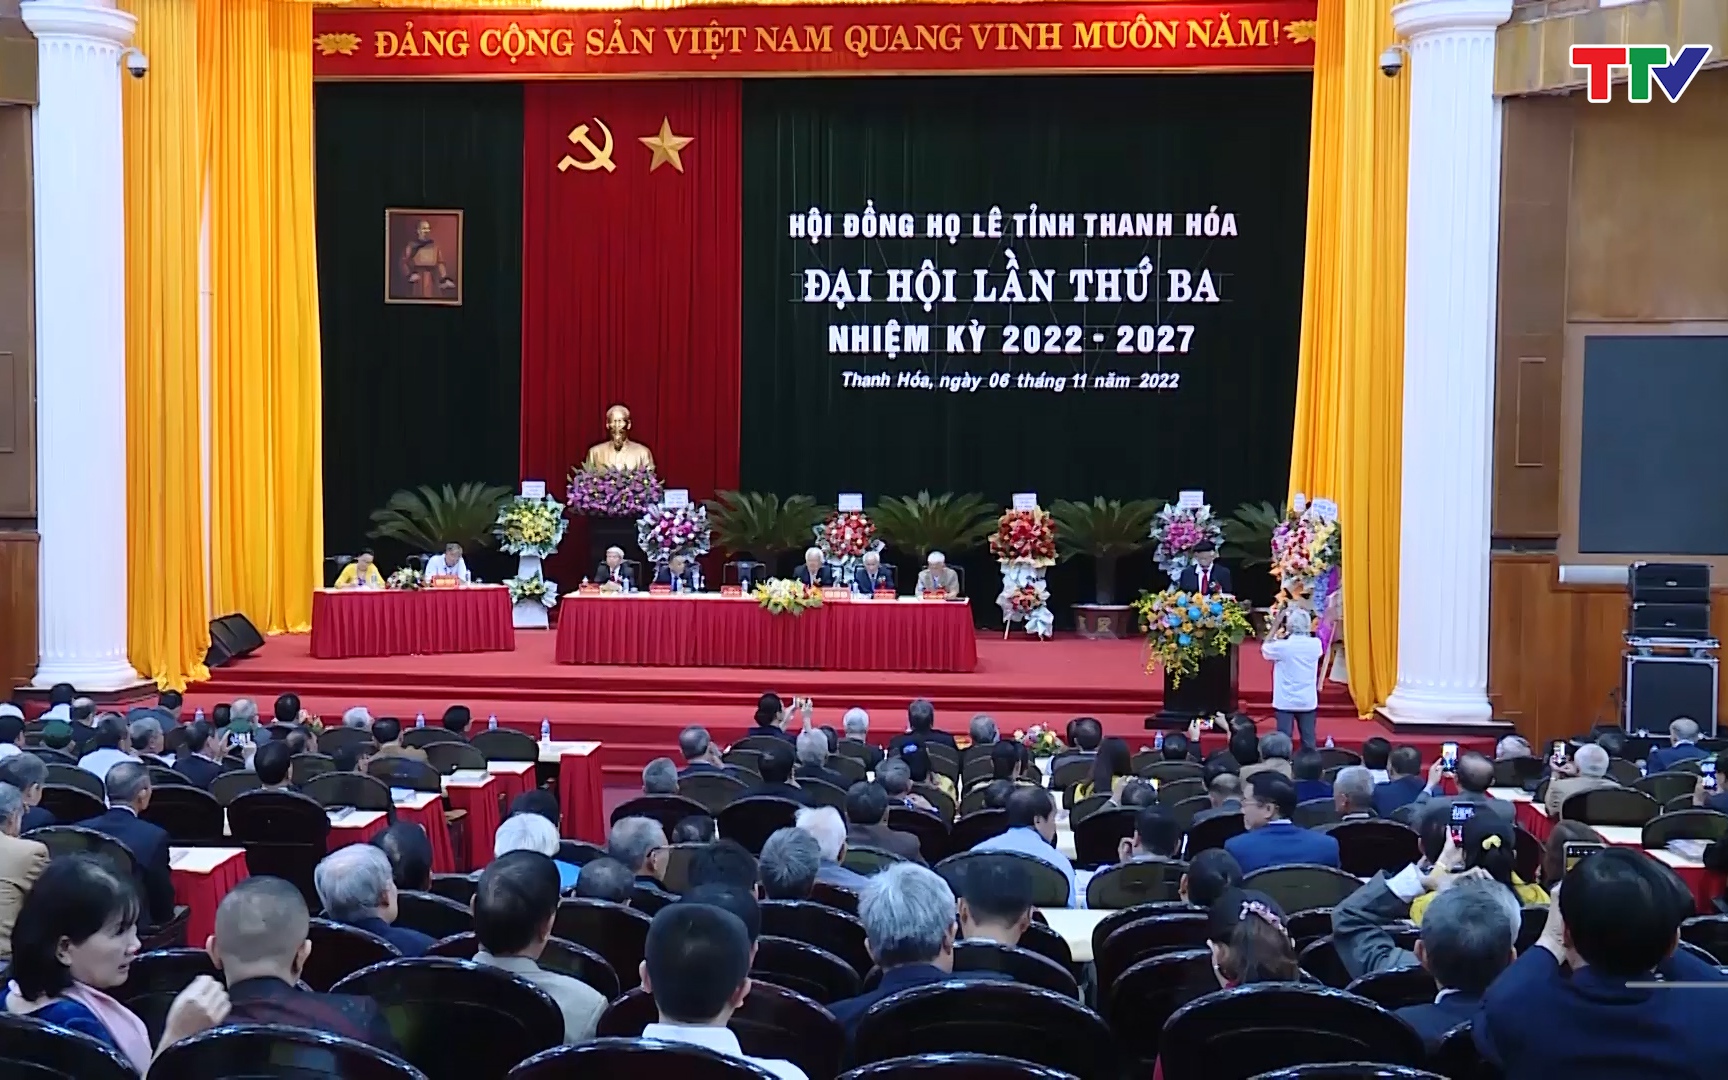 Hội đồng họ Lê Việt Nam, tỉnh Thanh Hóa đại hội đại biểu lần thứ III, nhiệm kỳ 2022-2027